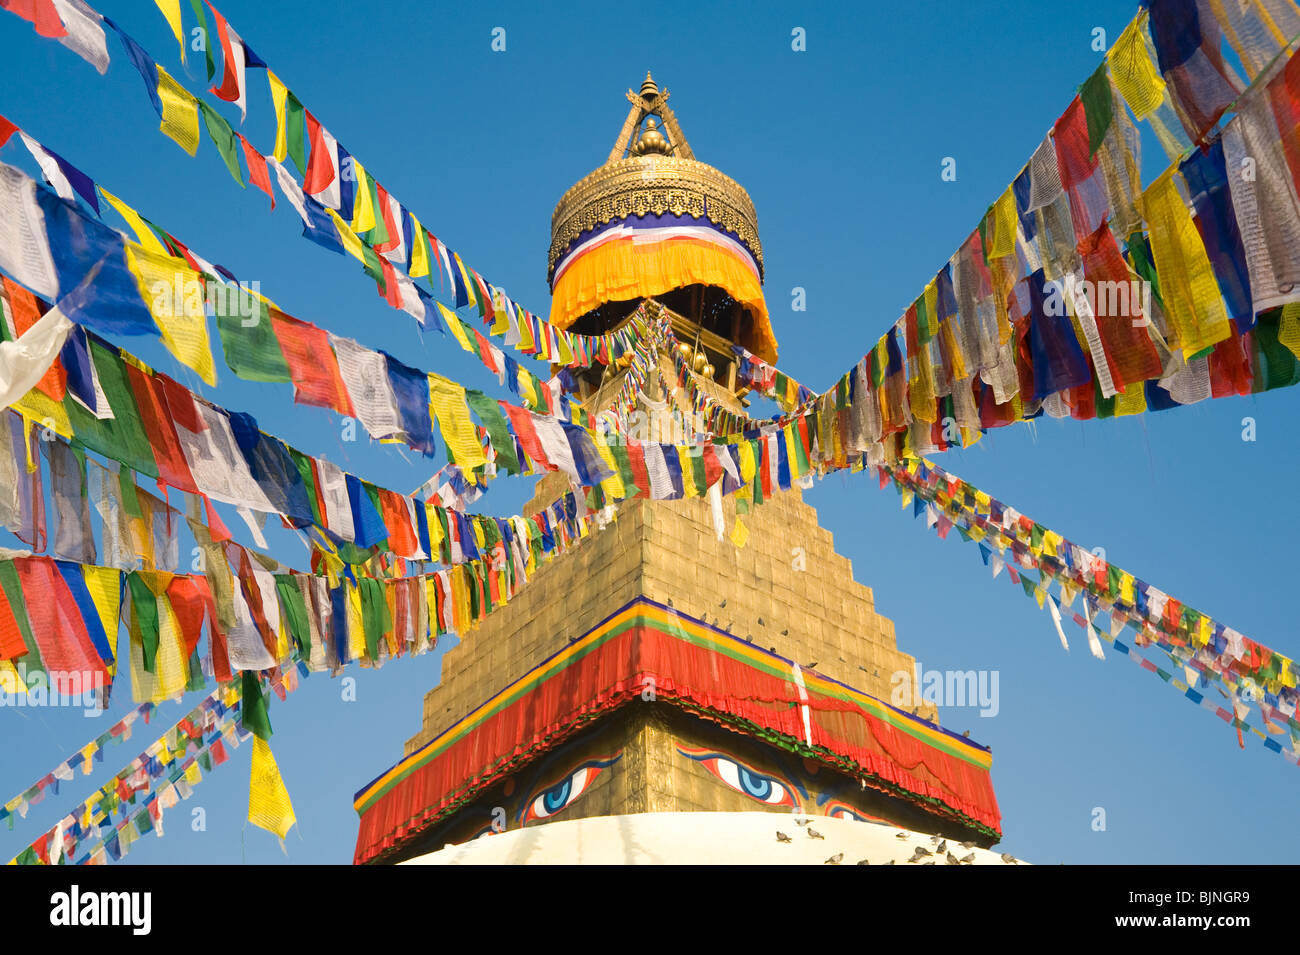 Haut de stupa Boudhanath avec de nombreux drapeaux de prière Tibetains à Katmandou, Népal Banque D'Images